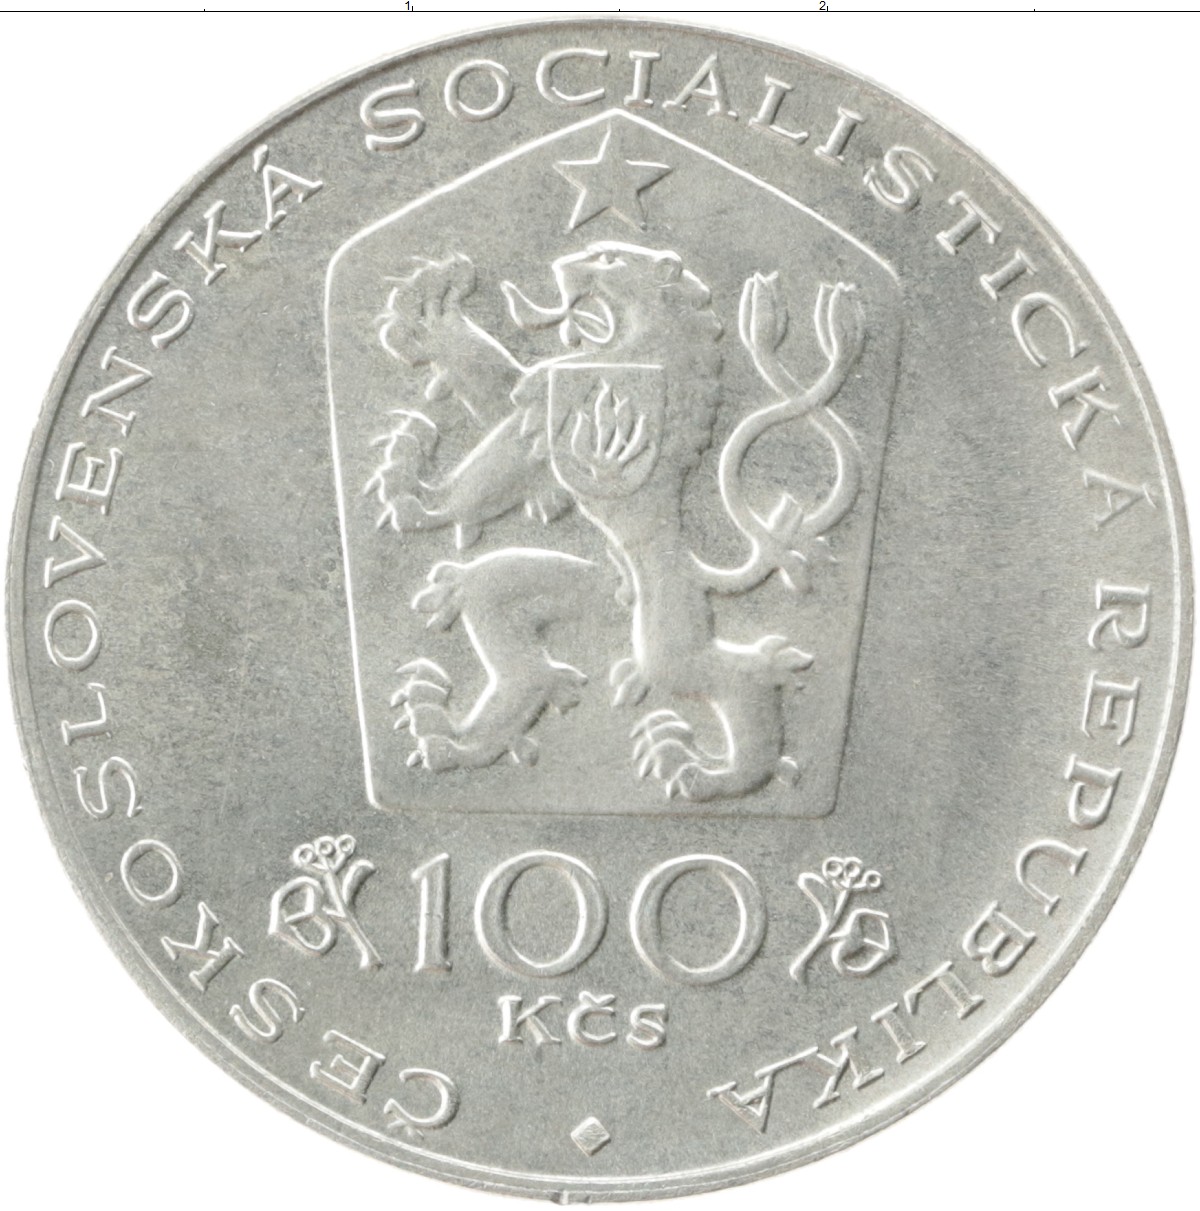 100 крон чехословакия. Монета Чехословакии 100 крон (1981). Чехословацкая крона 100. Чешские монеты 100. 100 Крона монета.